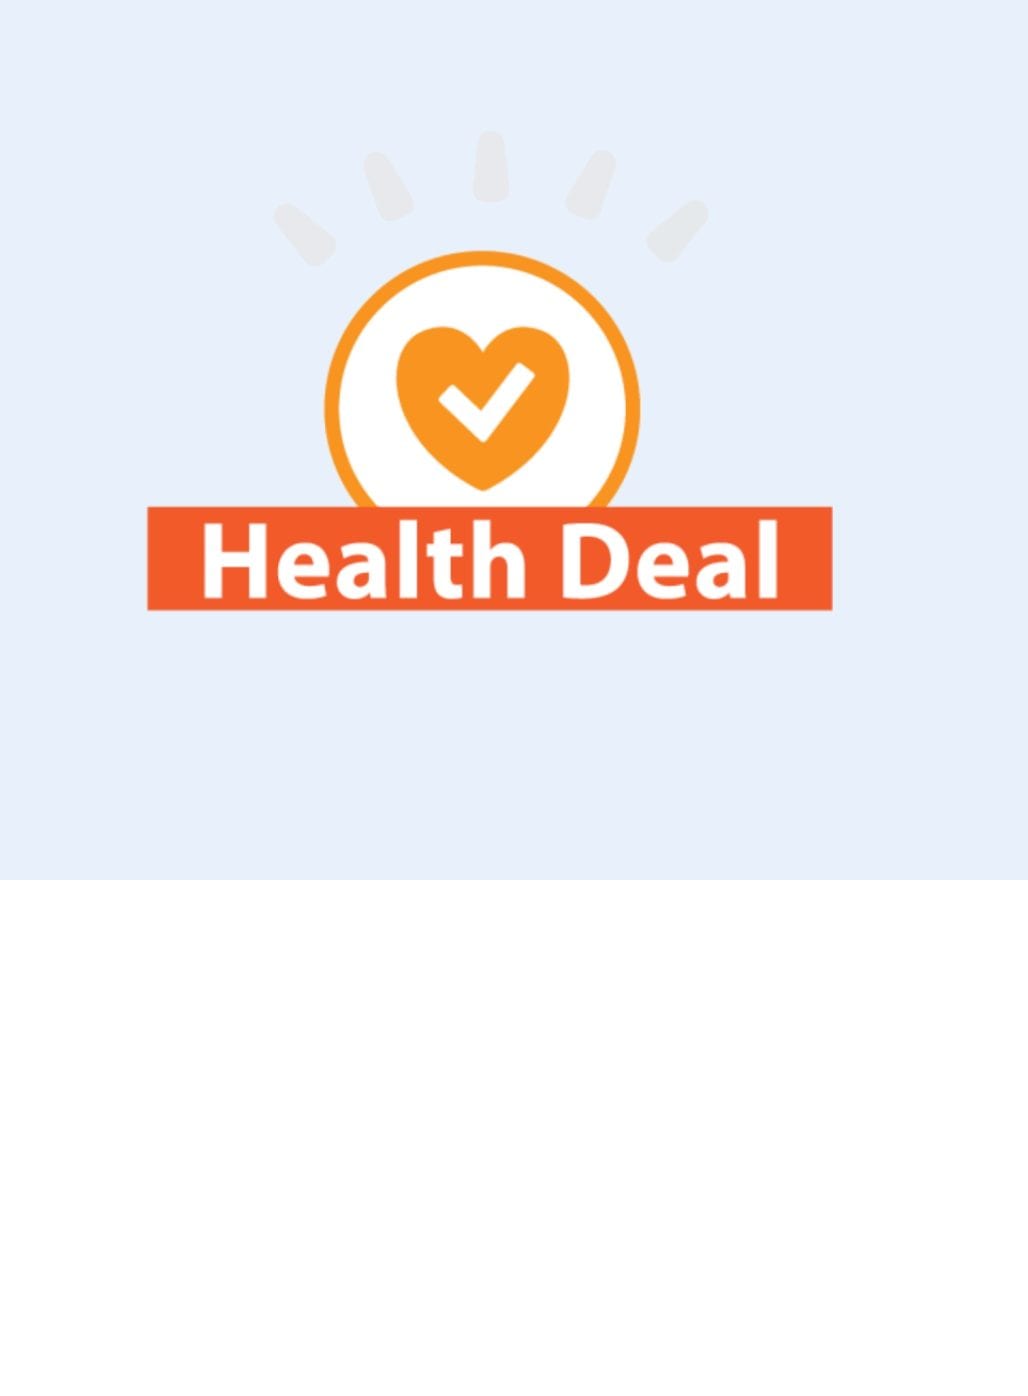 Voortgang Health Deal in beeld